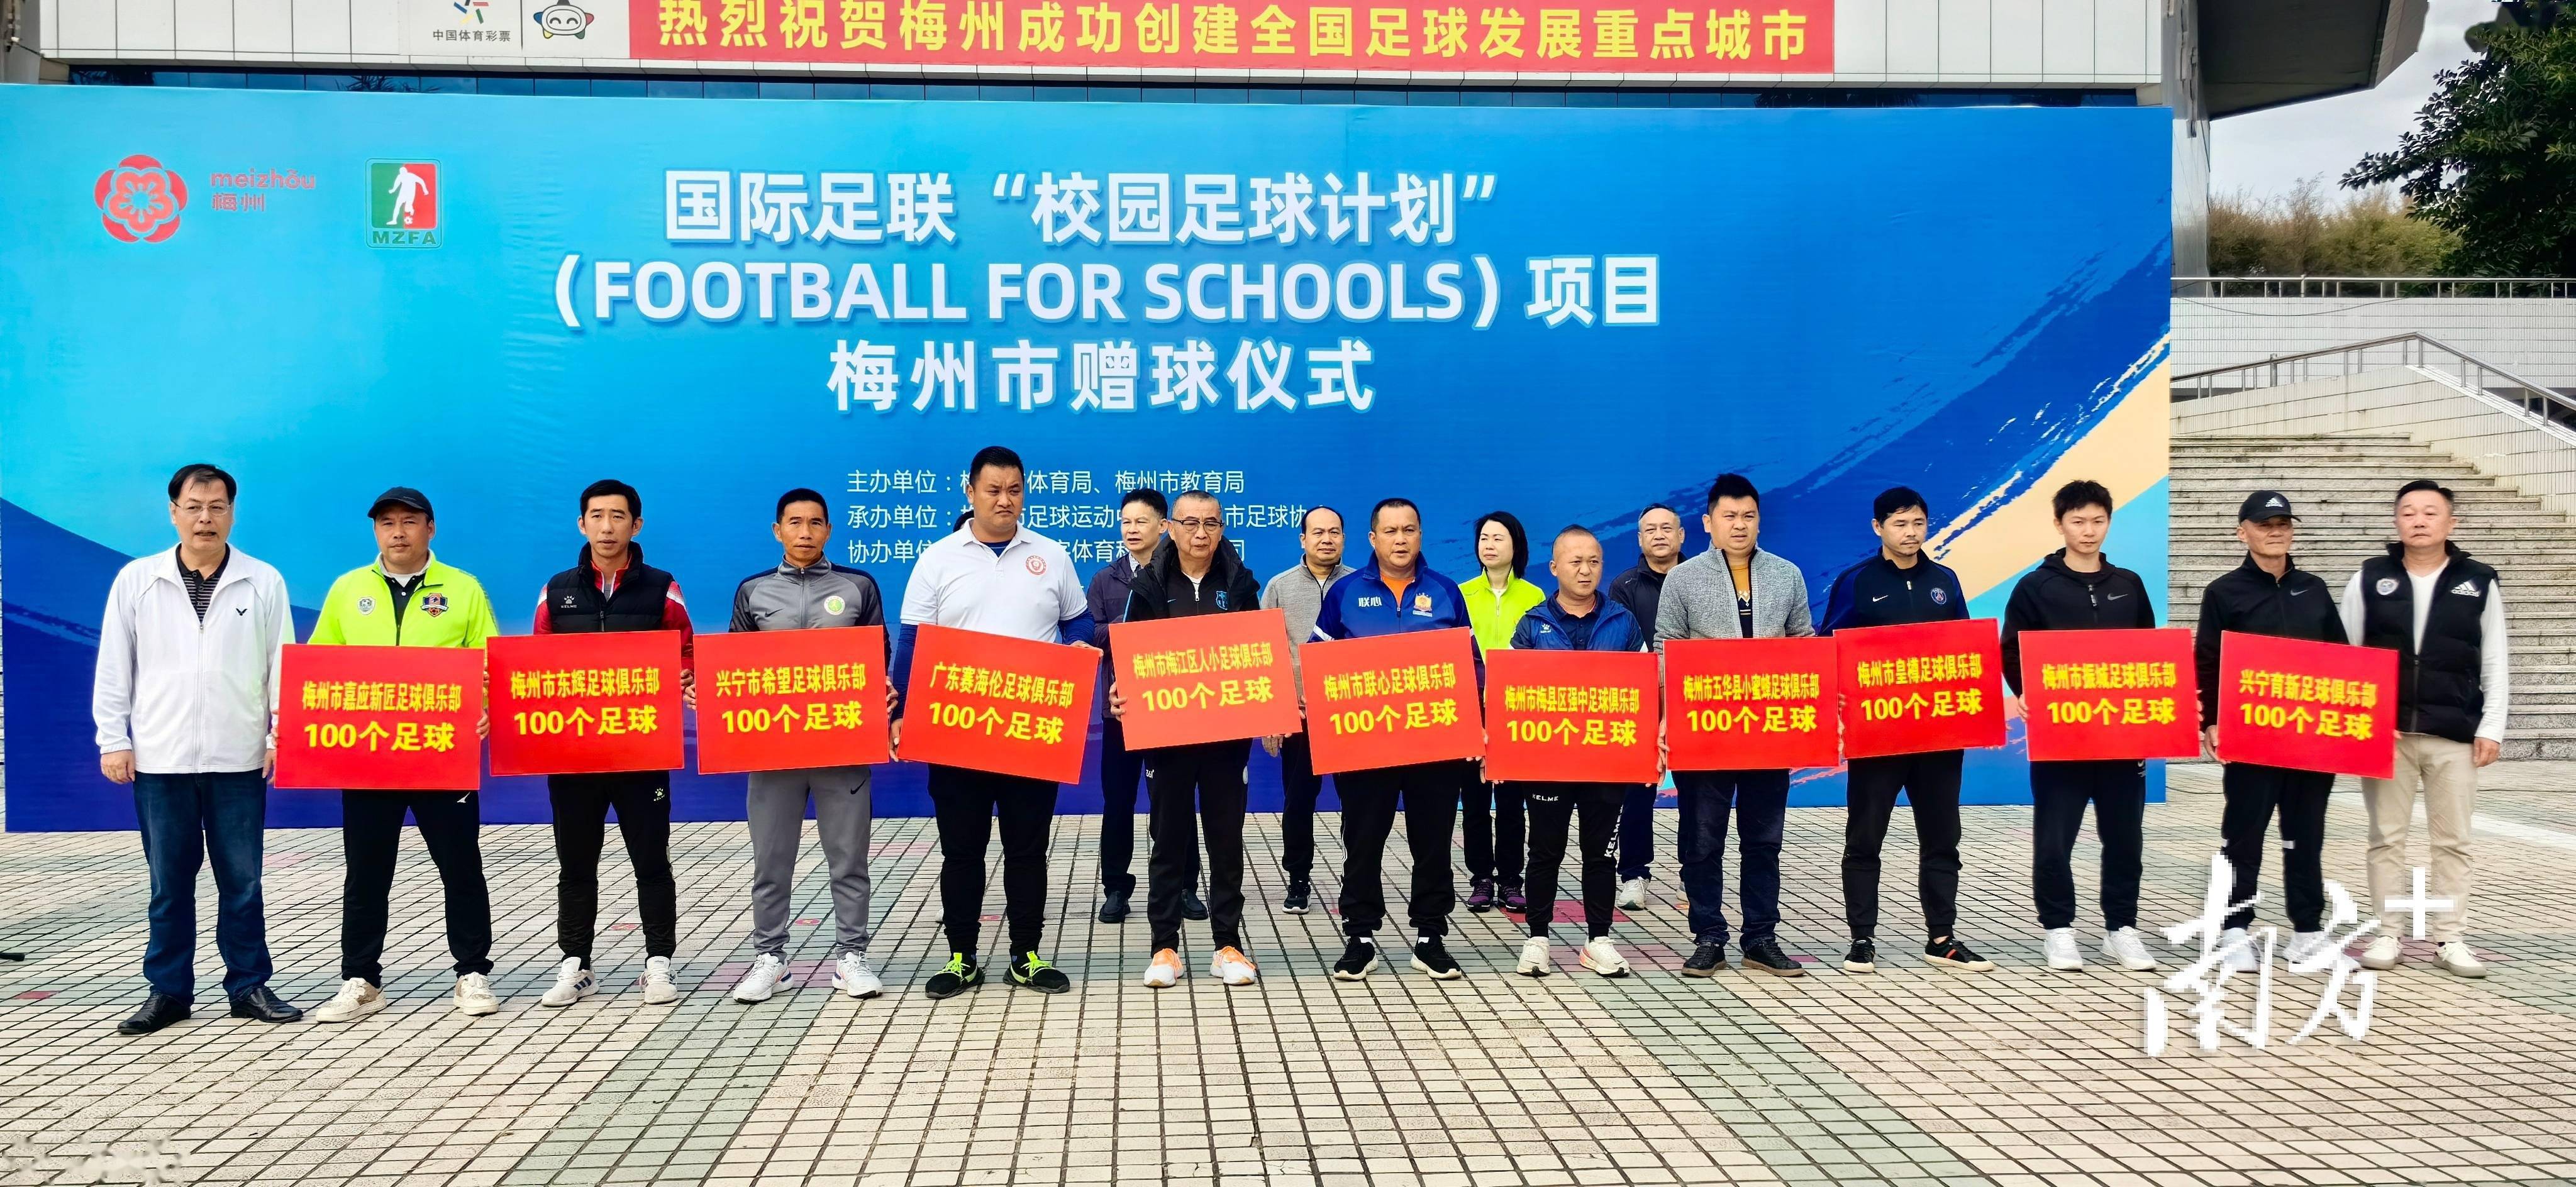 8100个！国际足联“校园足球计划”项目向梅州捐赠足球